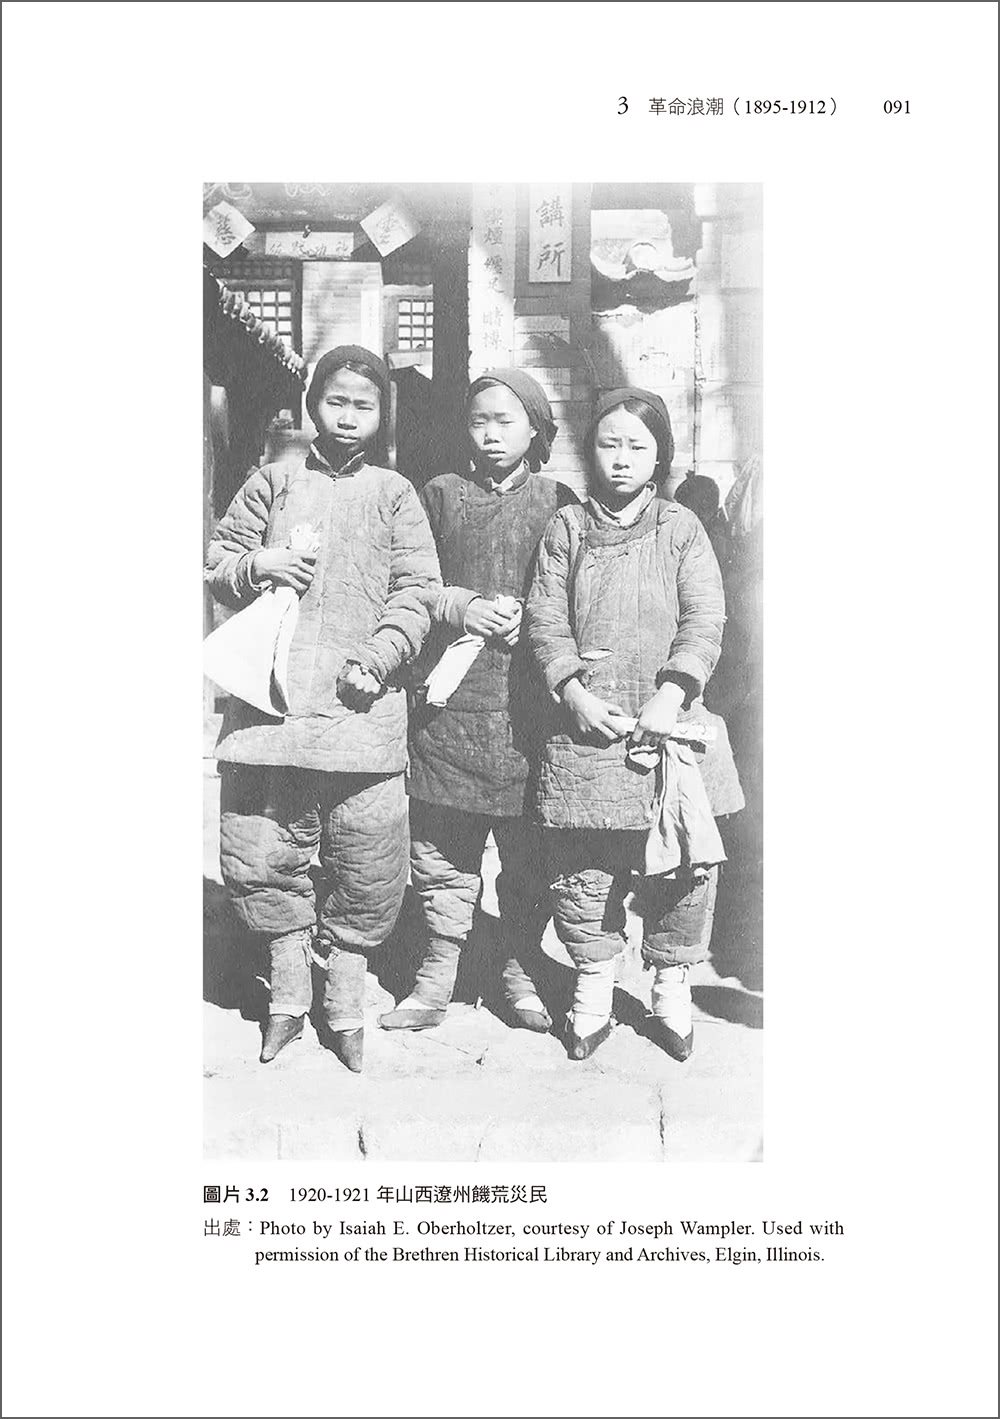 婦女與中國革命